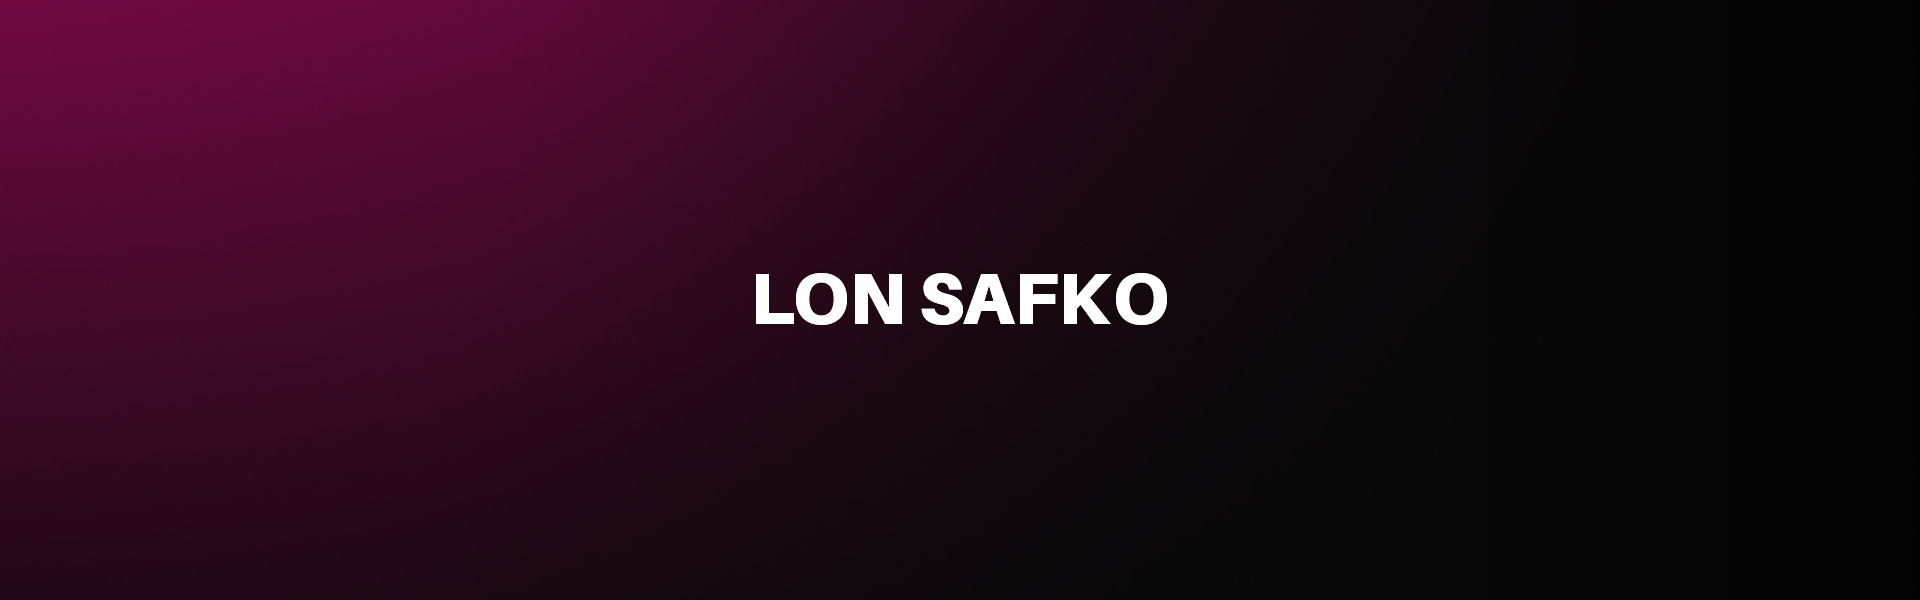 Lon Safko